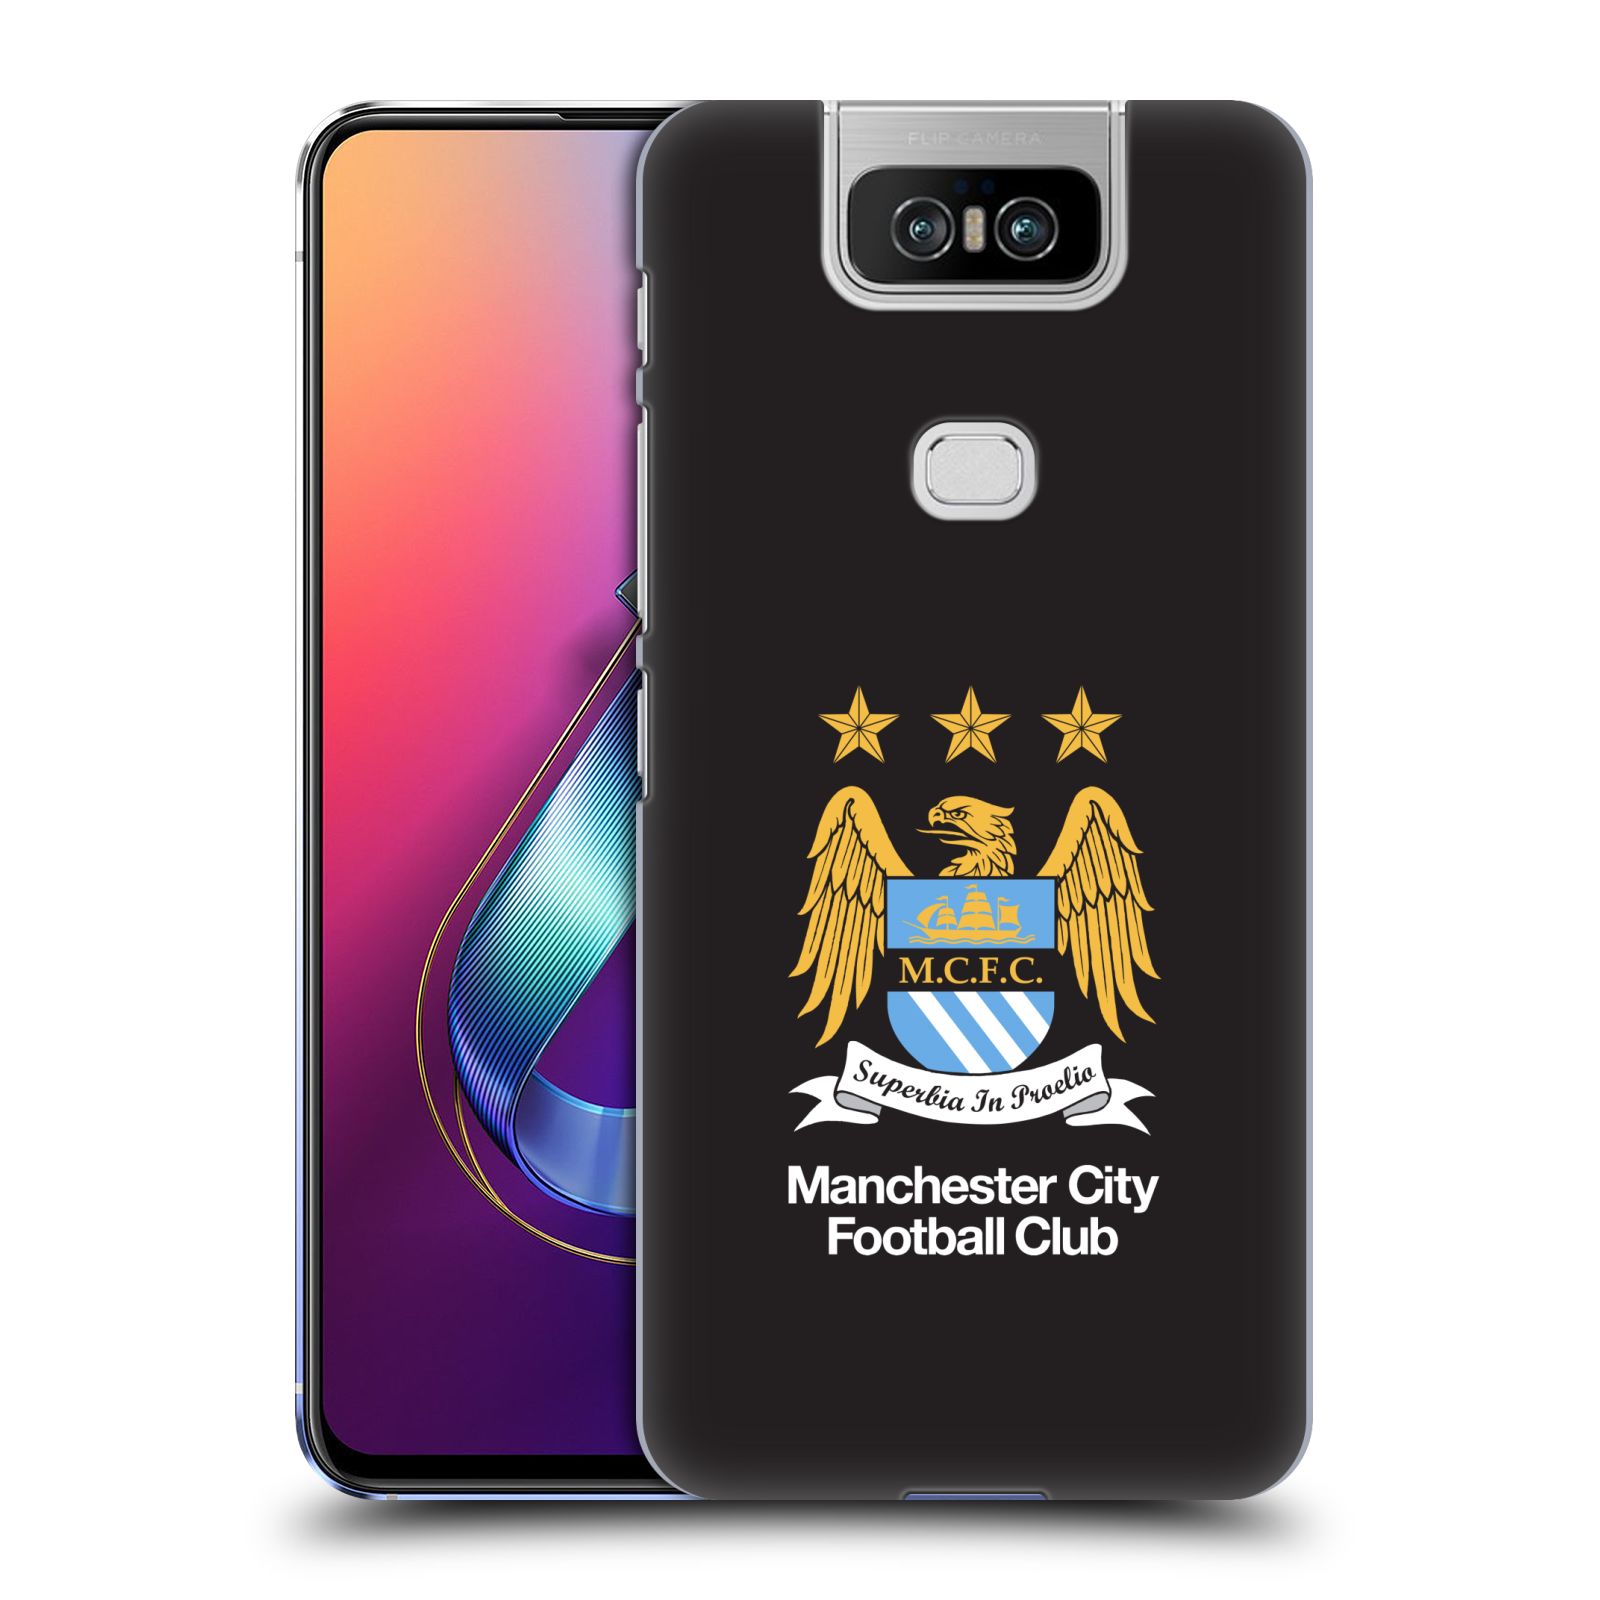 Pouzdro na mobil Asus Zenfone 6 ZS630KL - HEAD CASE - Fotbalový klub Manchester City černé pozadí velký znak